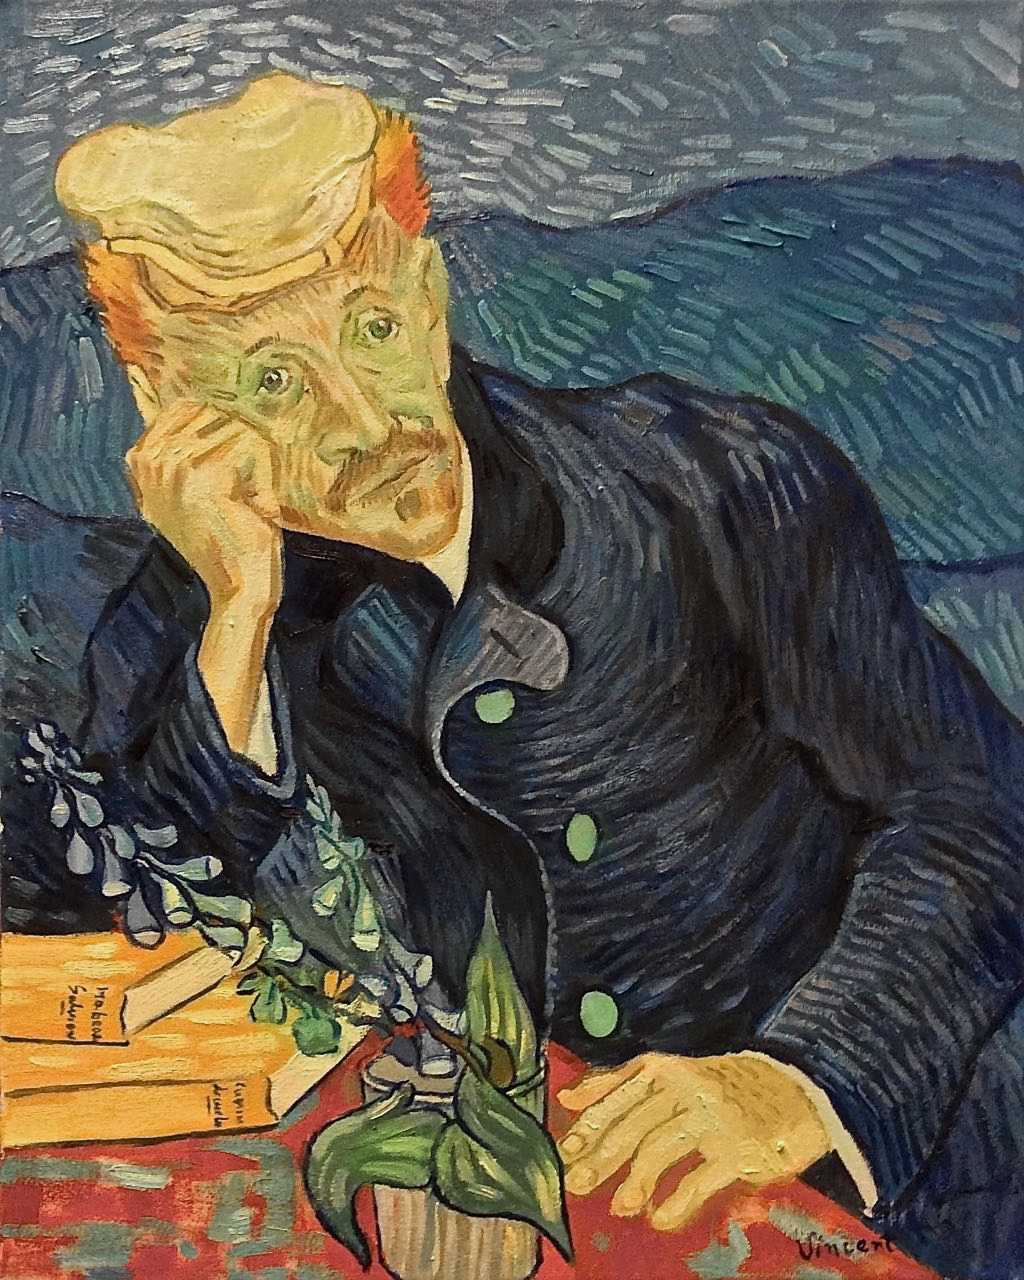 Картина ван гога «звездная ночь» — вдохновение и тайна в одной картине